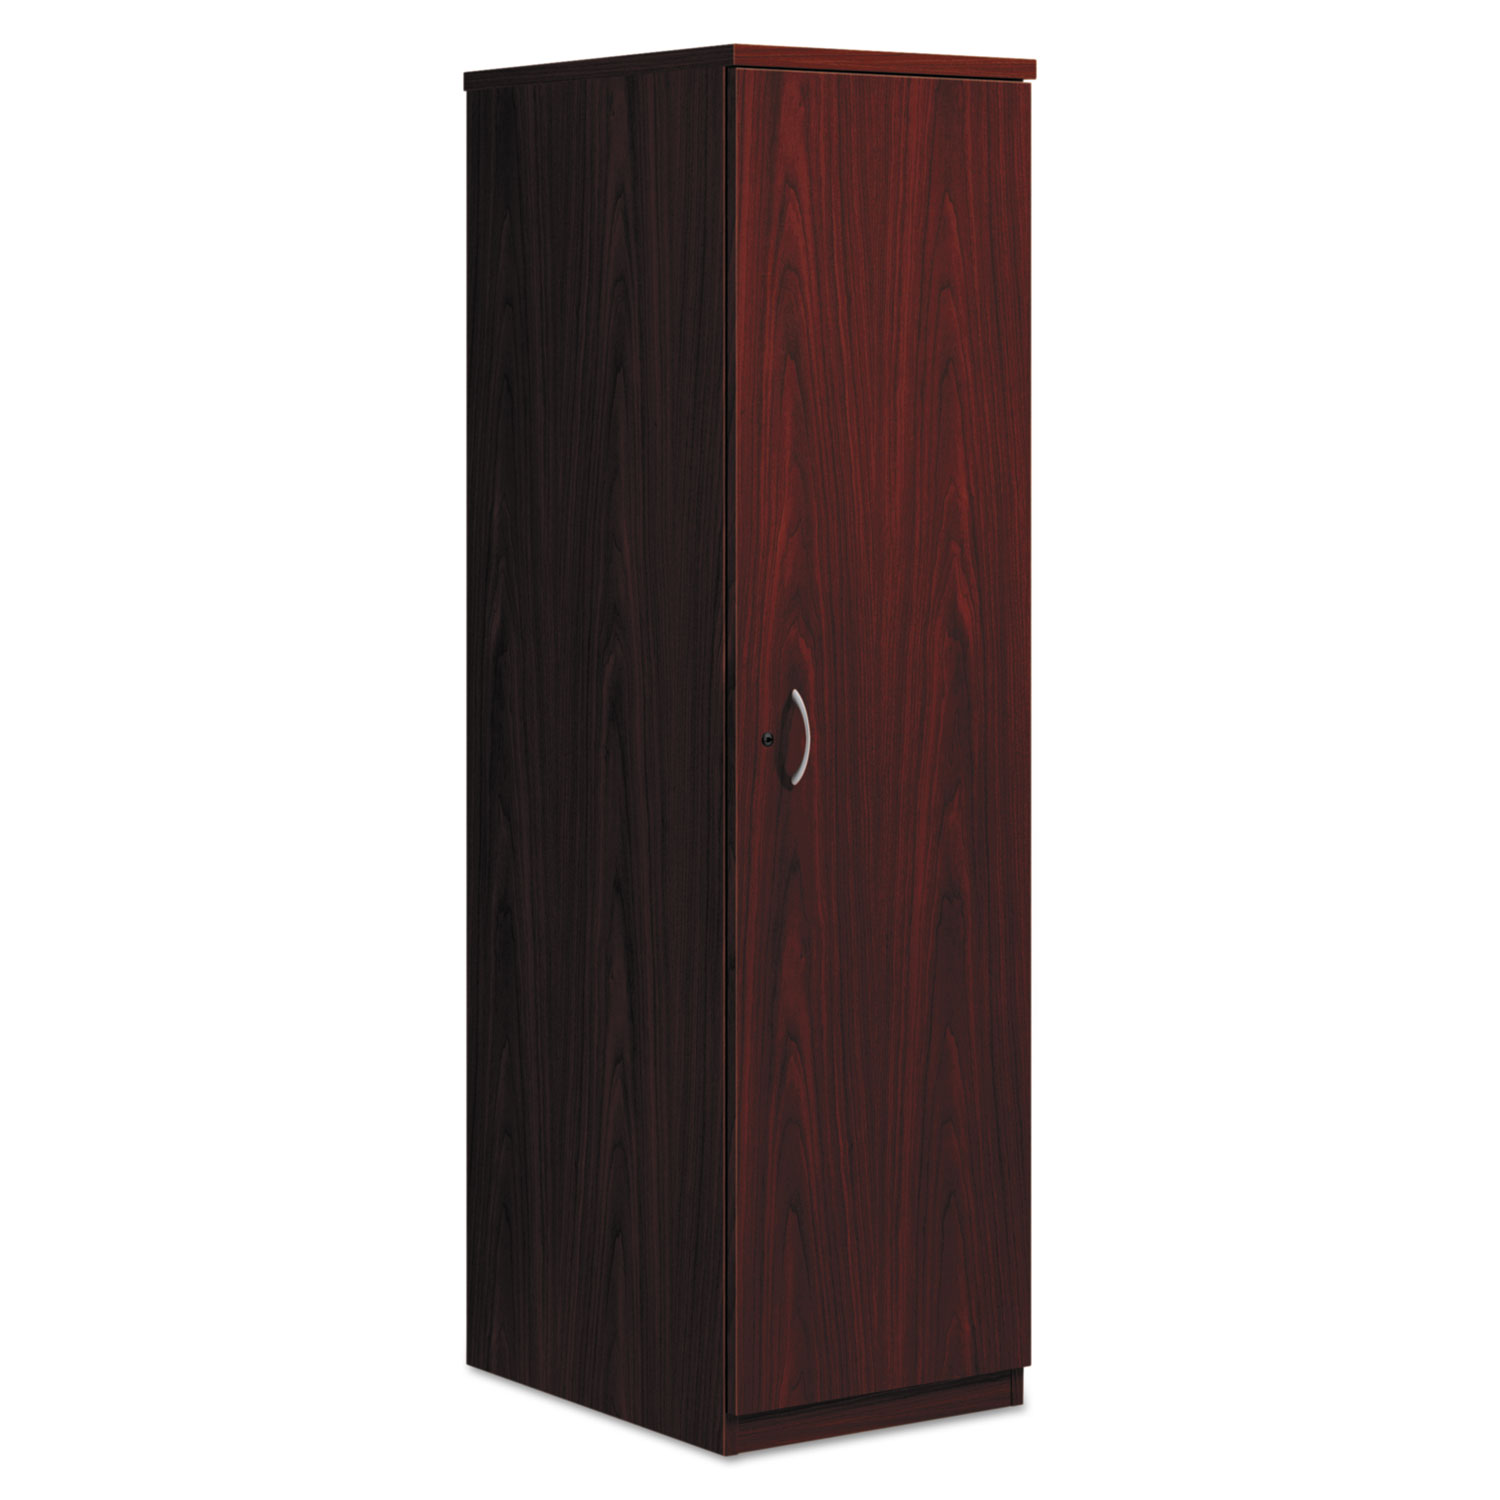 BL Series Personal Wardrobe Cabinet, 18w x 24d x 66h, Mahogany